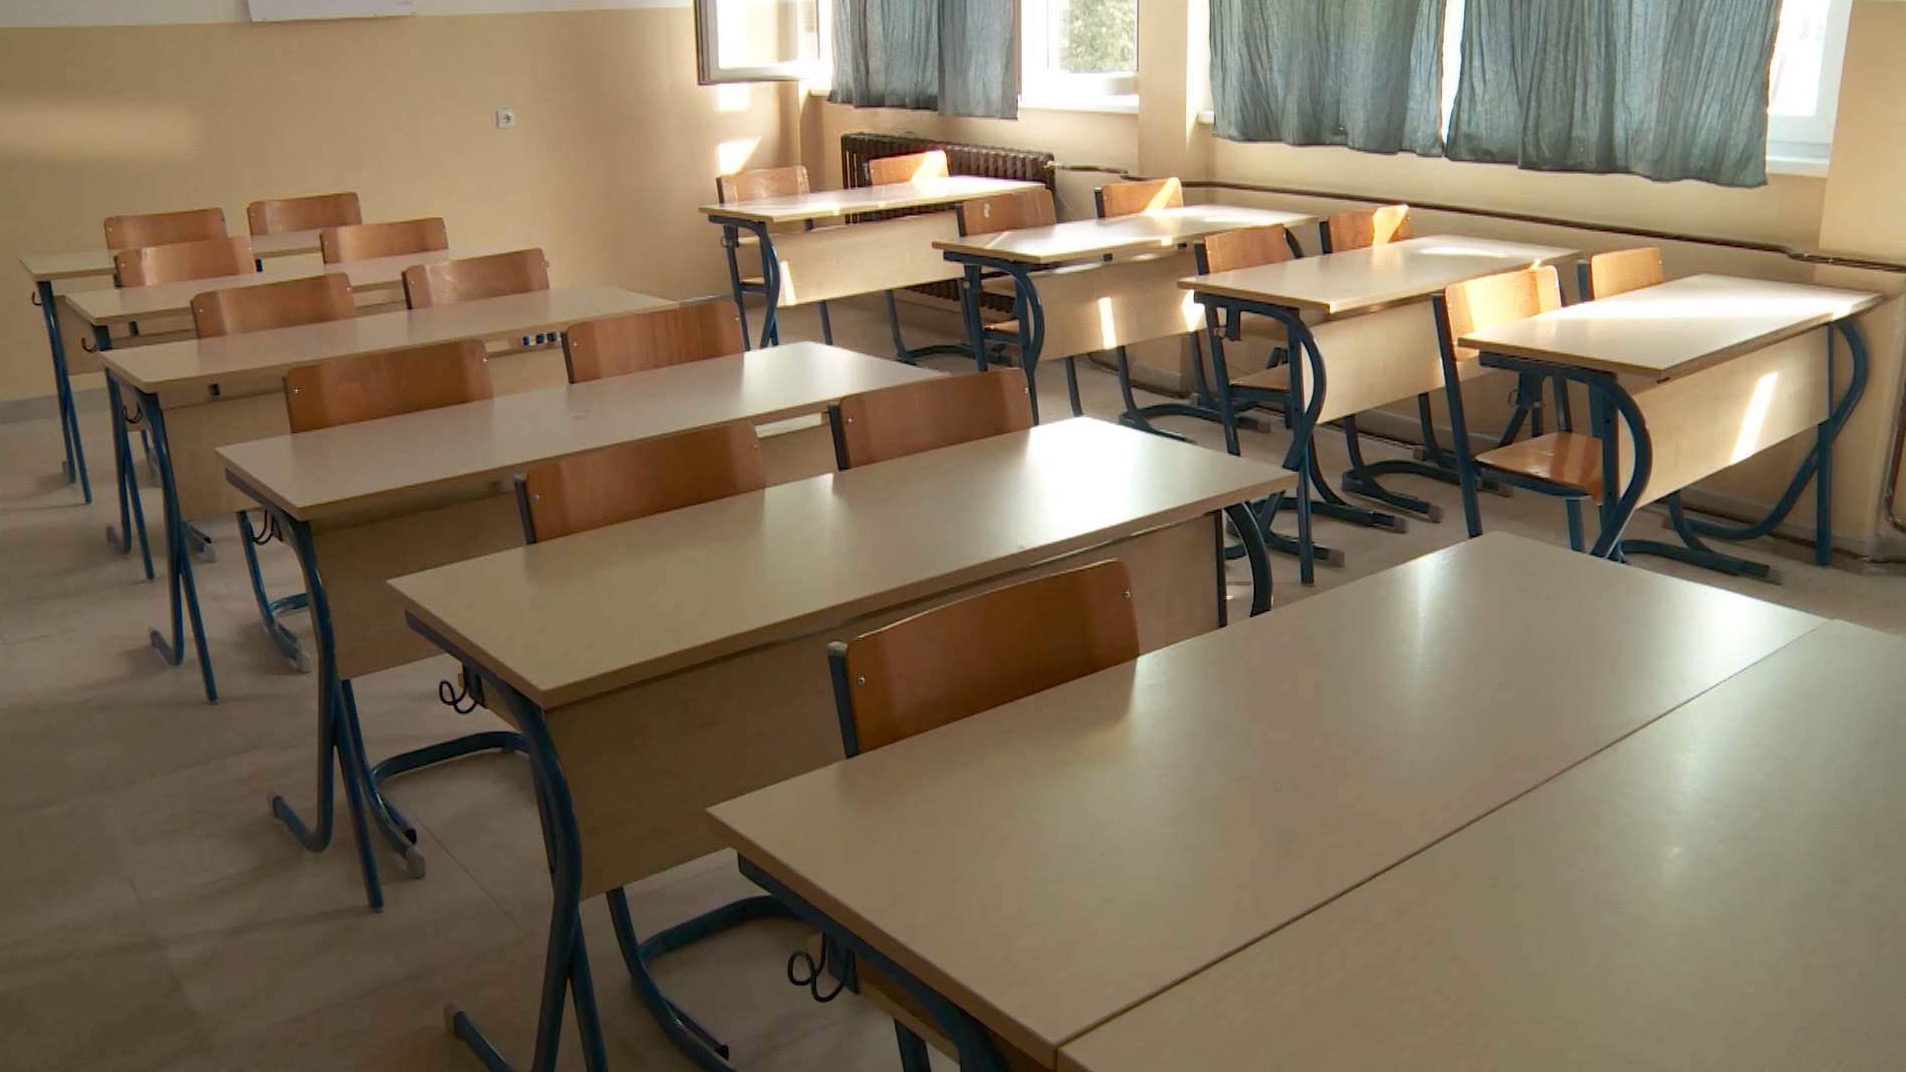 Sindikat poziva na obustavu nastave u osnovnim školama u Sarajevu